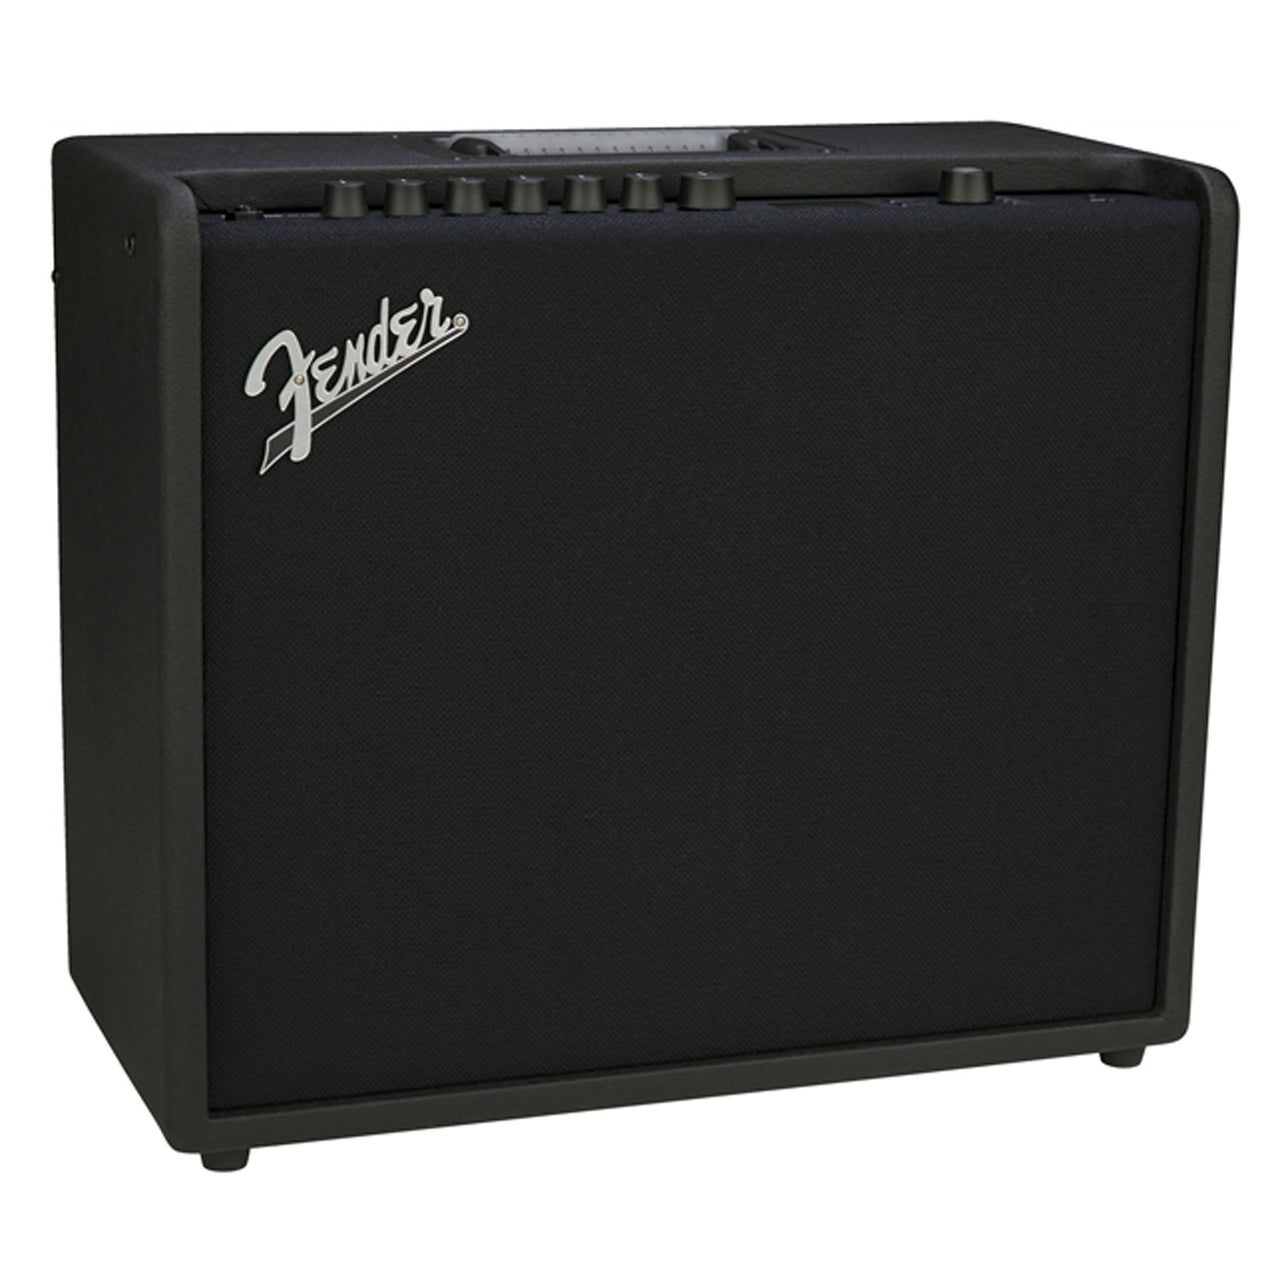 Amplificador Fender Mustang Gt 100 120v, 2310200000